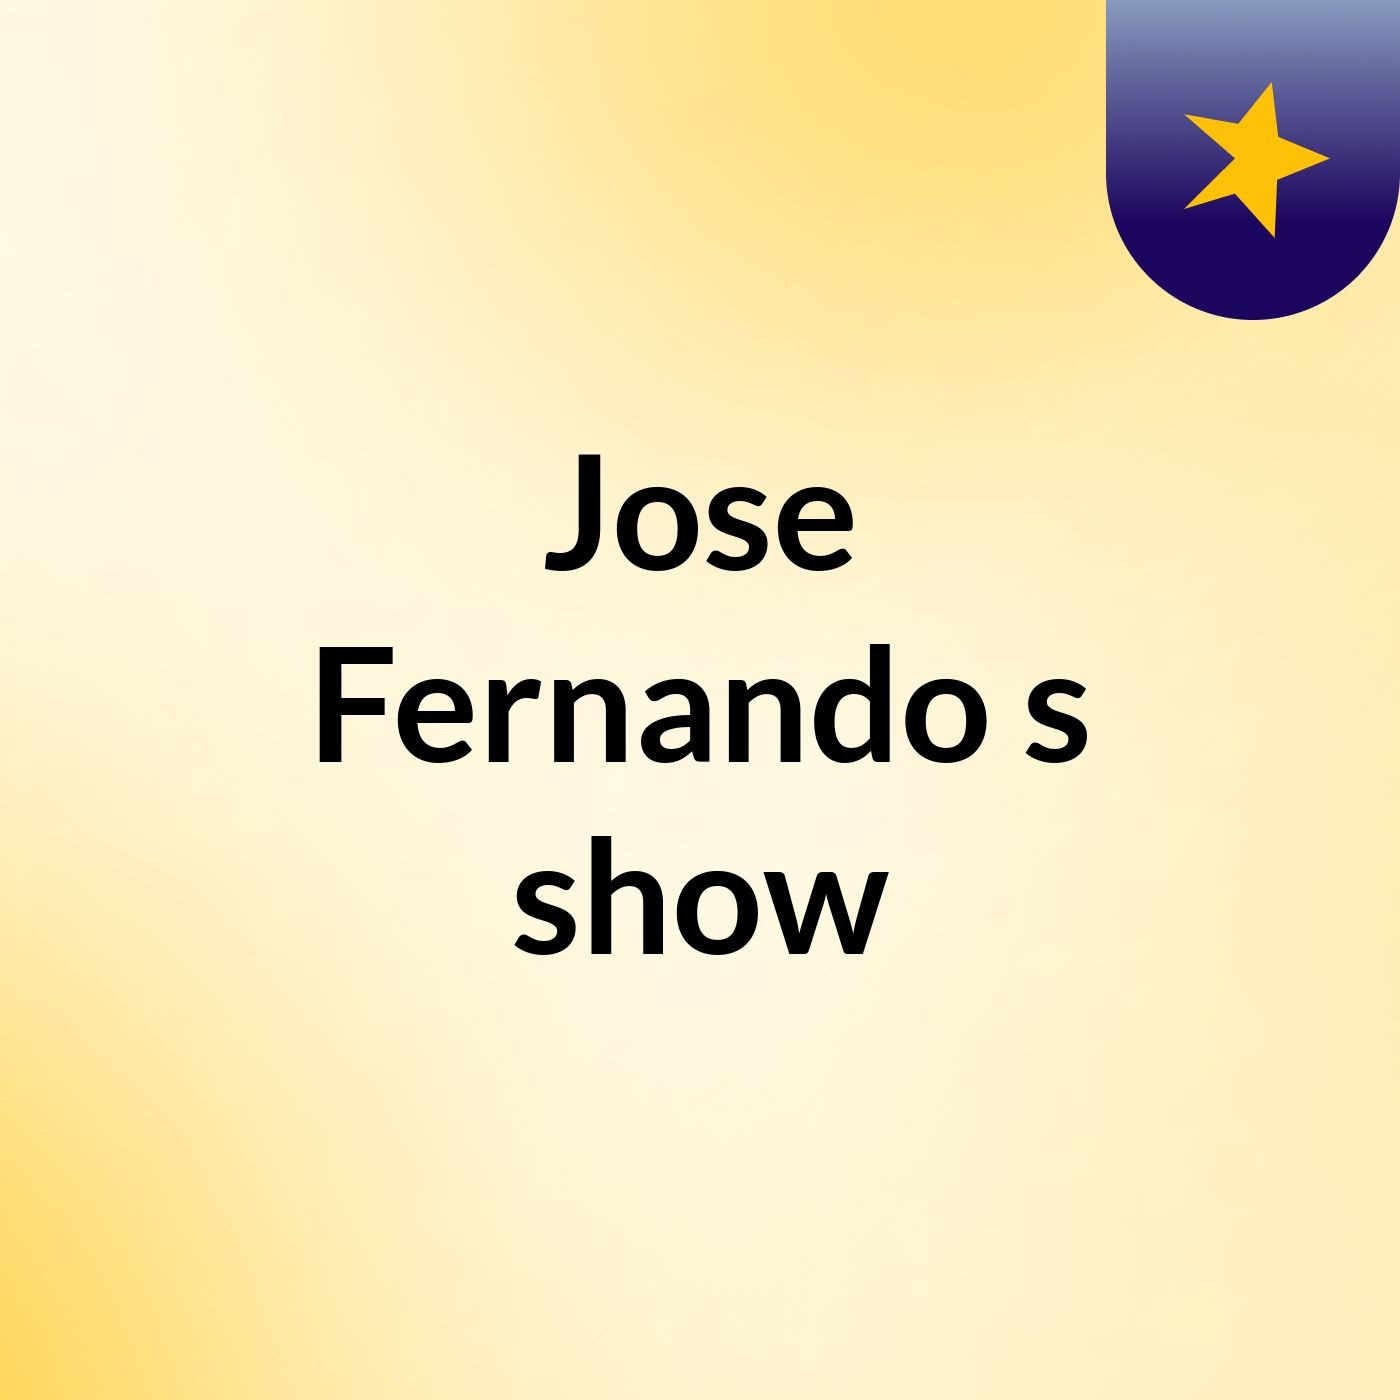 Jose Fernando's show